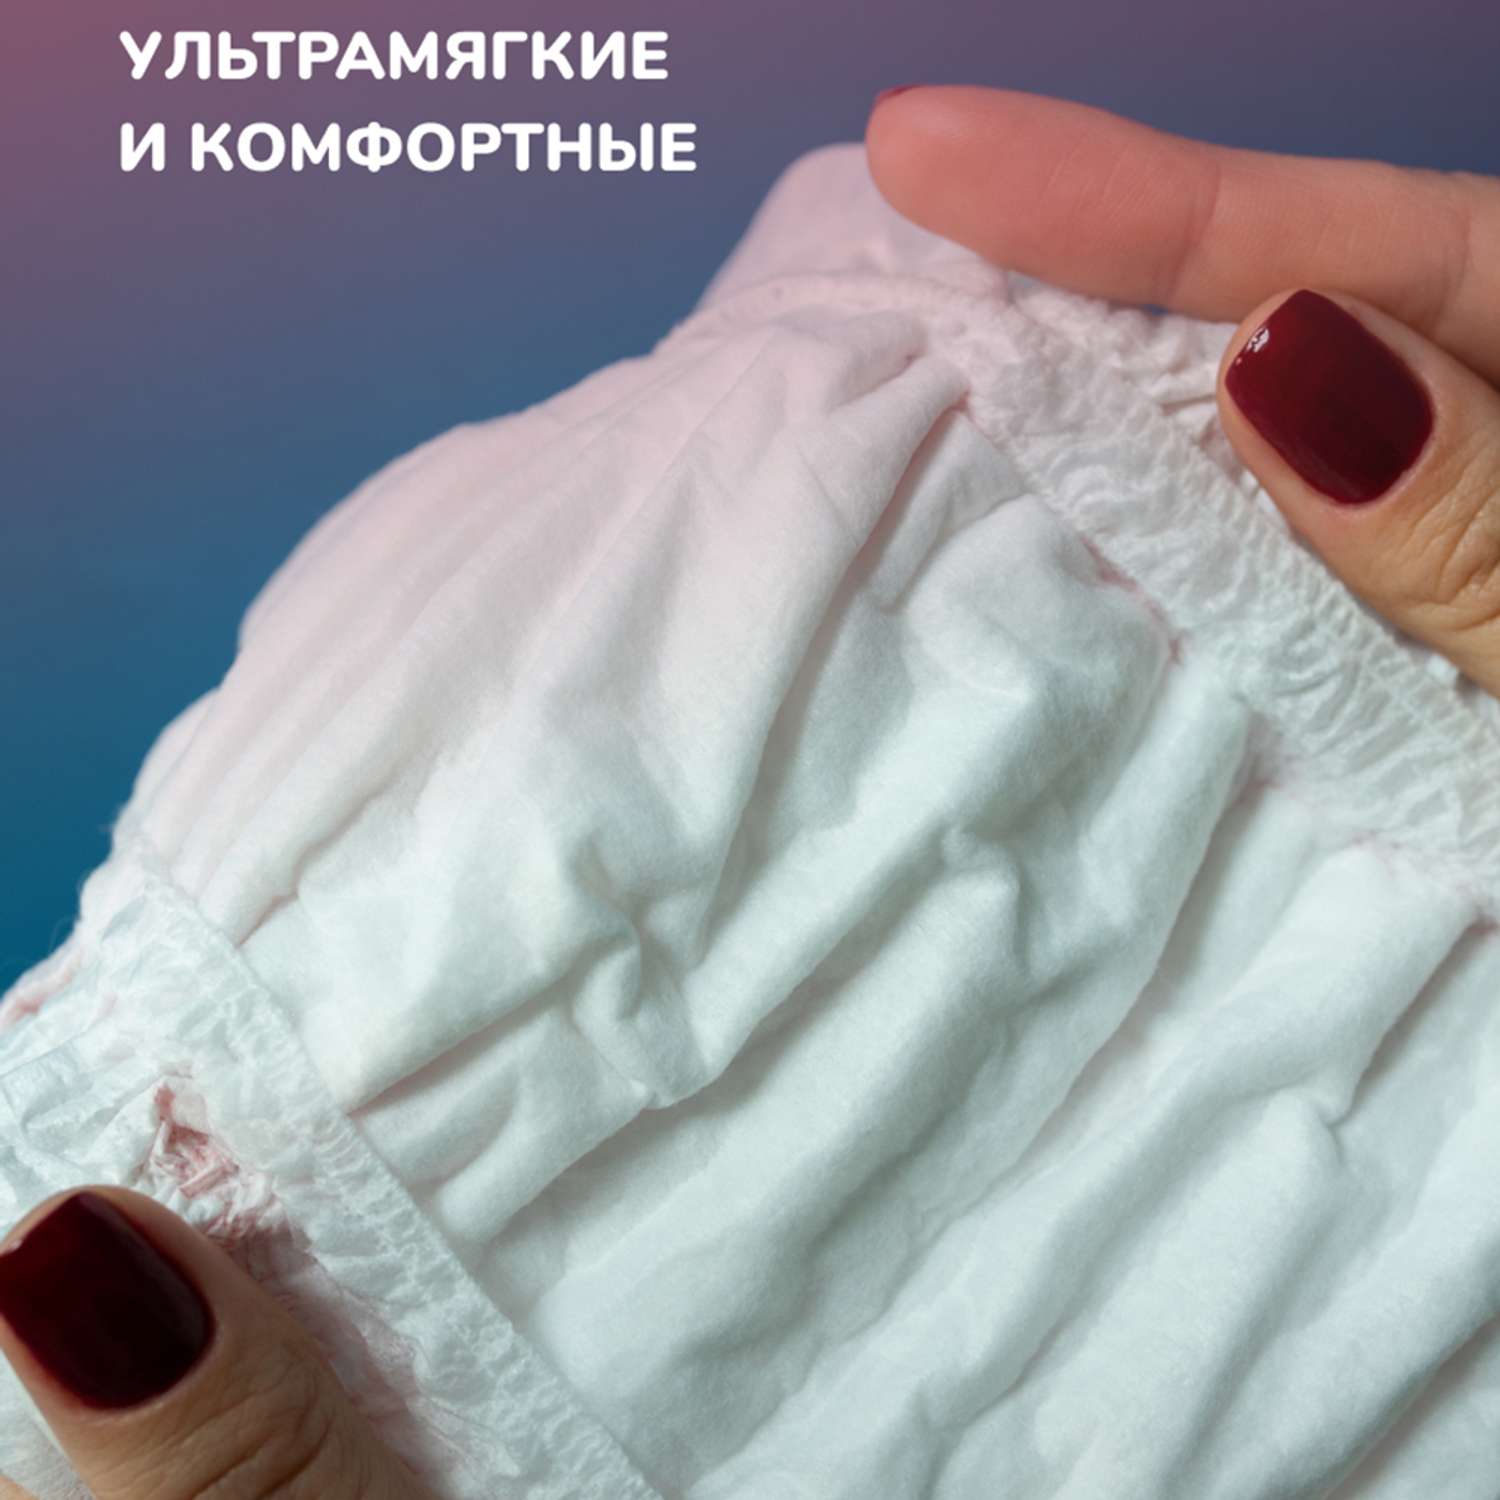 Трусы женские одноразовые Dr.Skipp послеродовые менструальные размер M 2 упаковки по 3 шт - фото 6